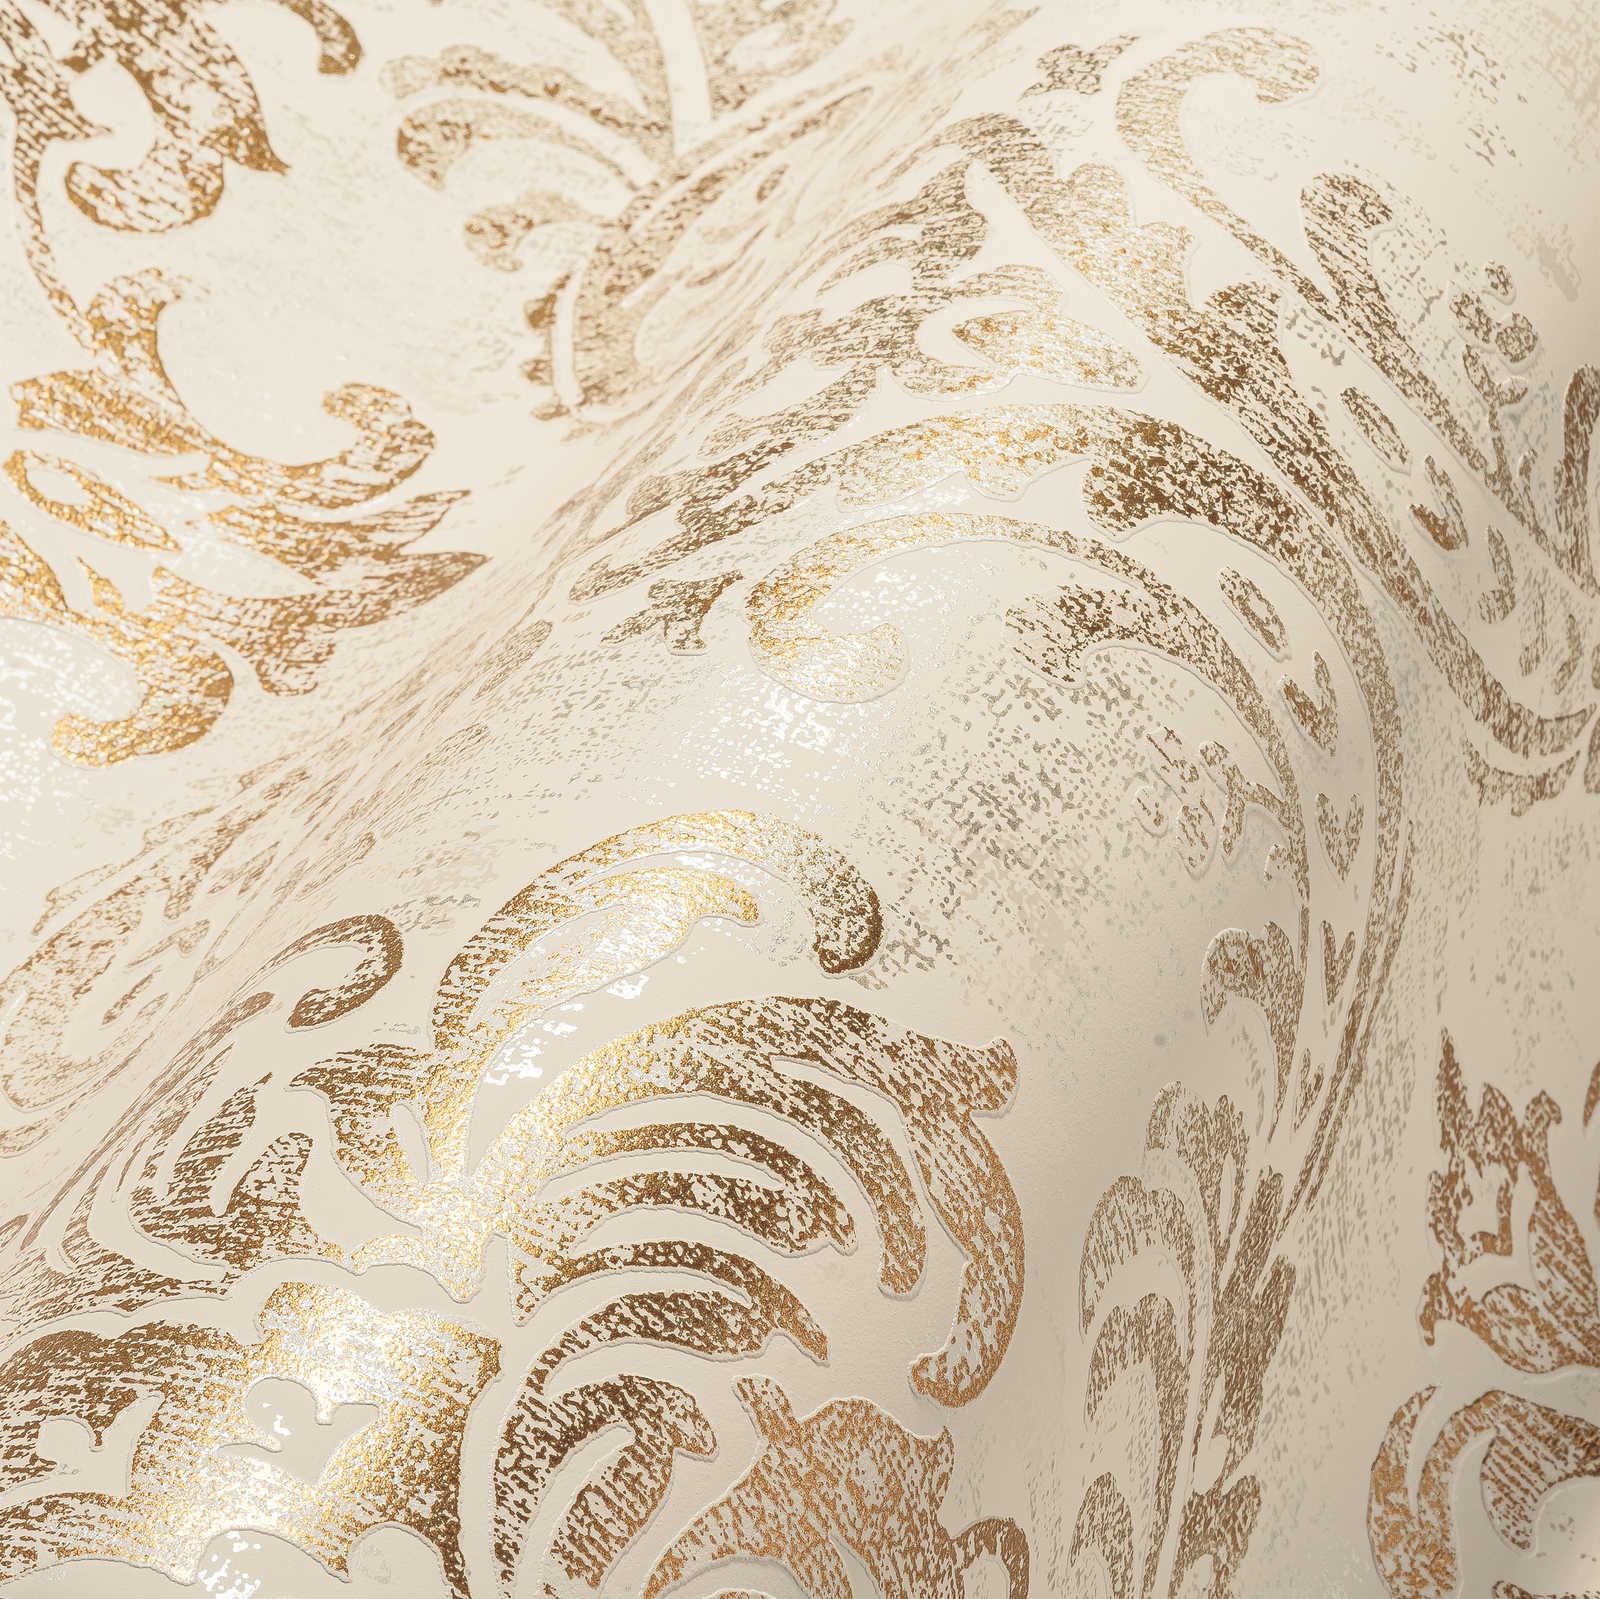             Papel pintado barroco en tejido-no-tejido con ornamento y aspecto metálico brillante - blanco, dorado, plateado
        